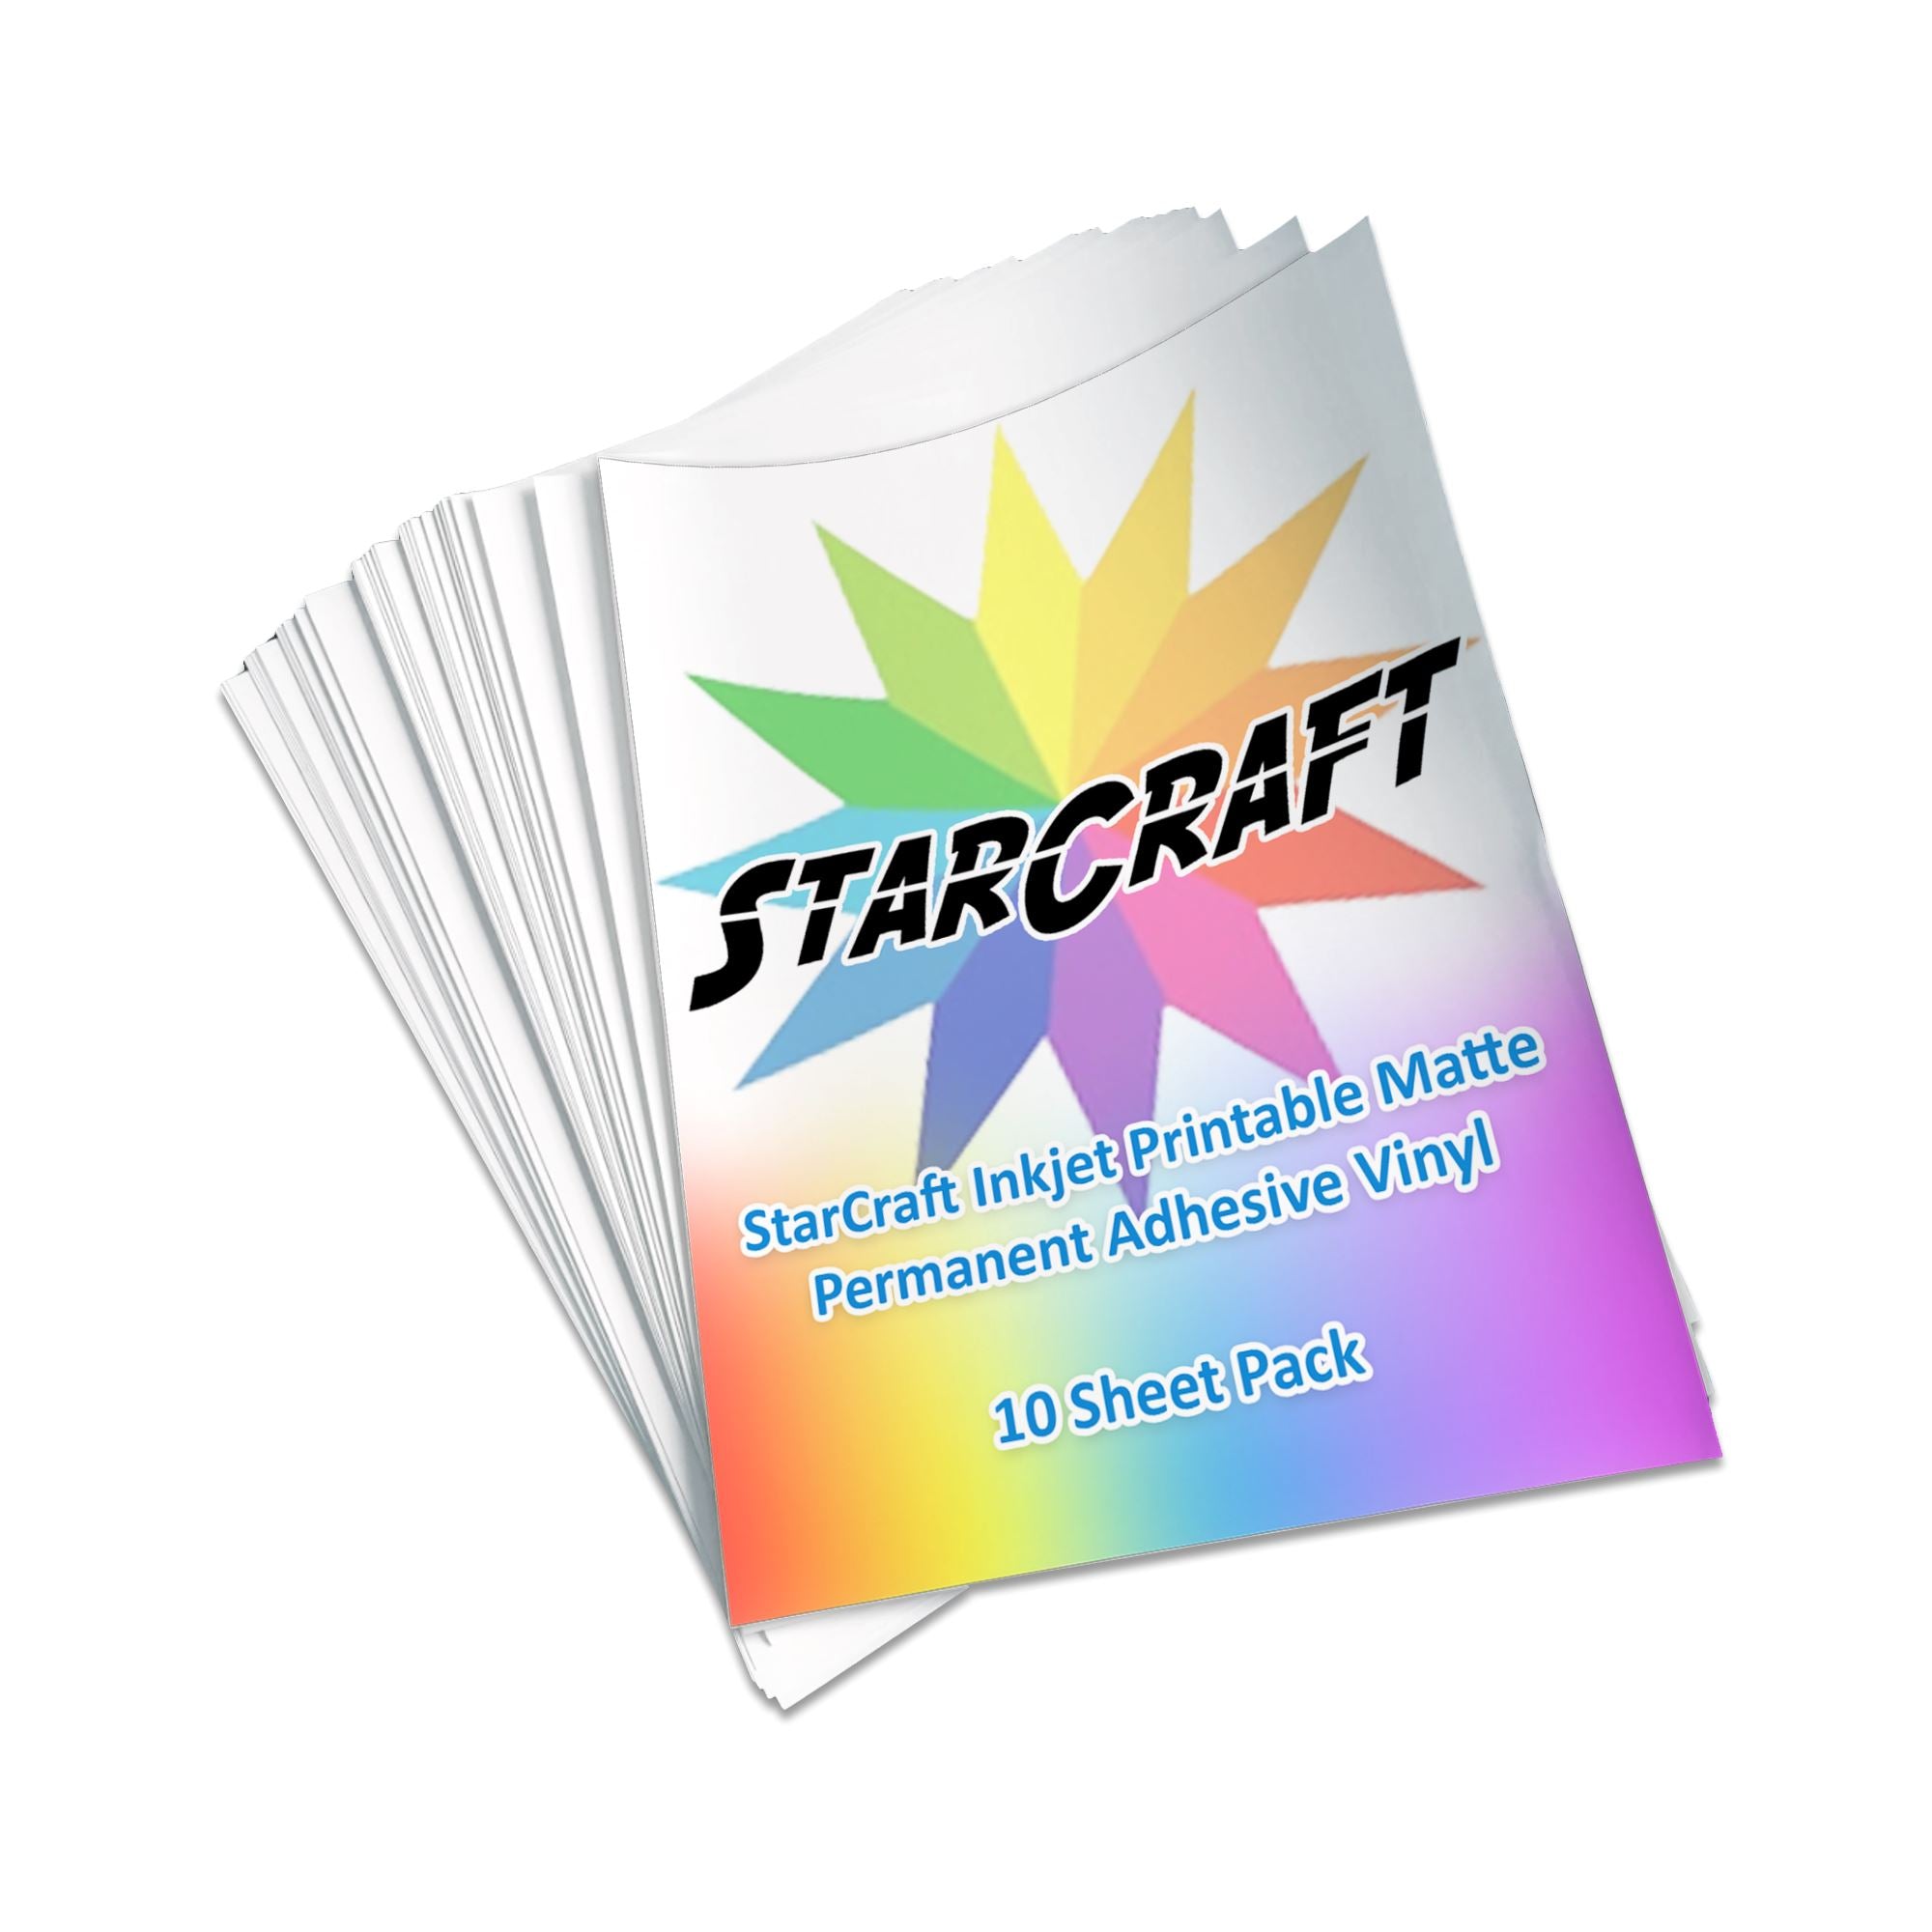 Starcraft Inkjet Printable Heat Transfer 10 Sheet Pack - Dark Materials